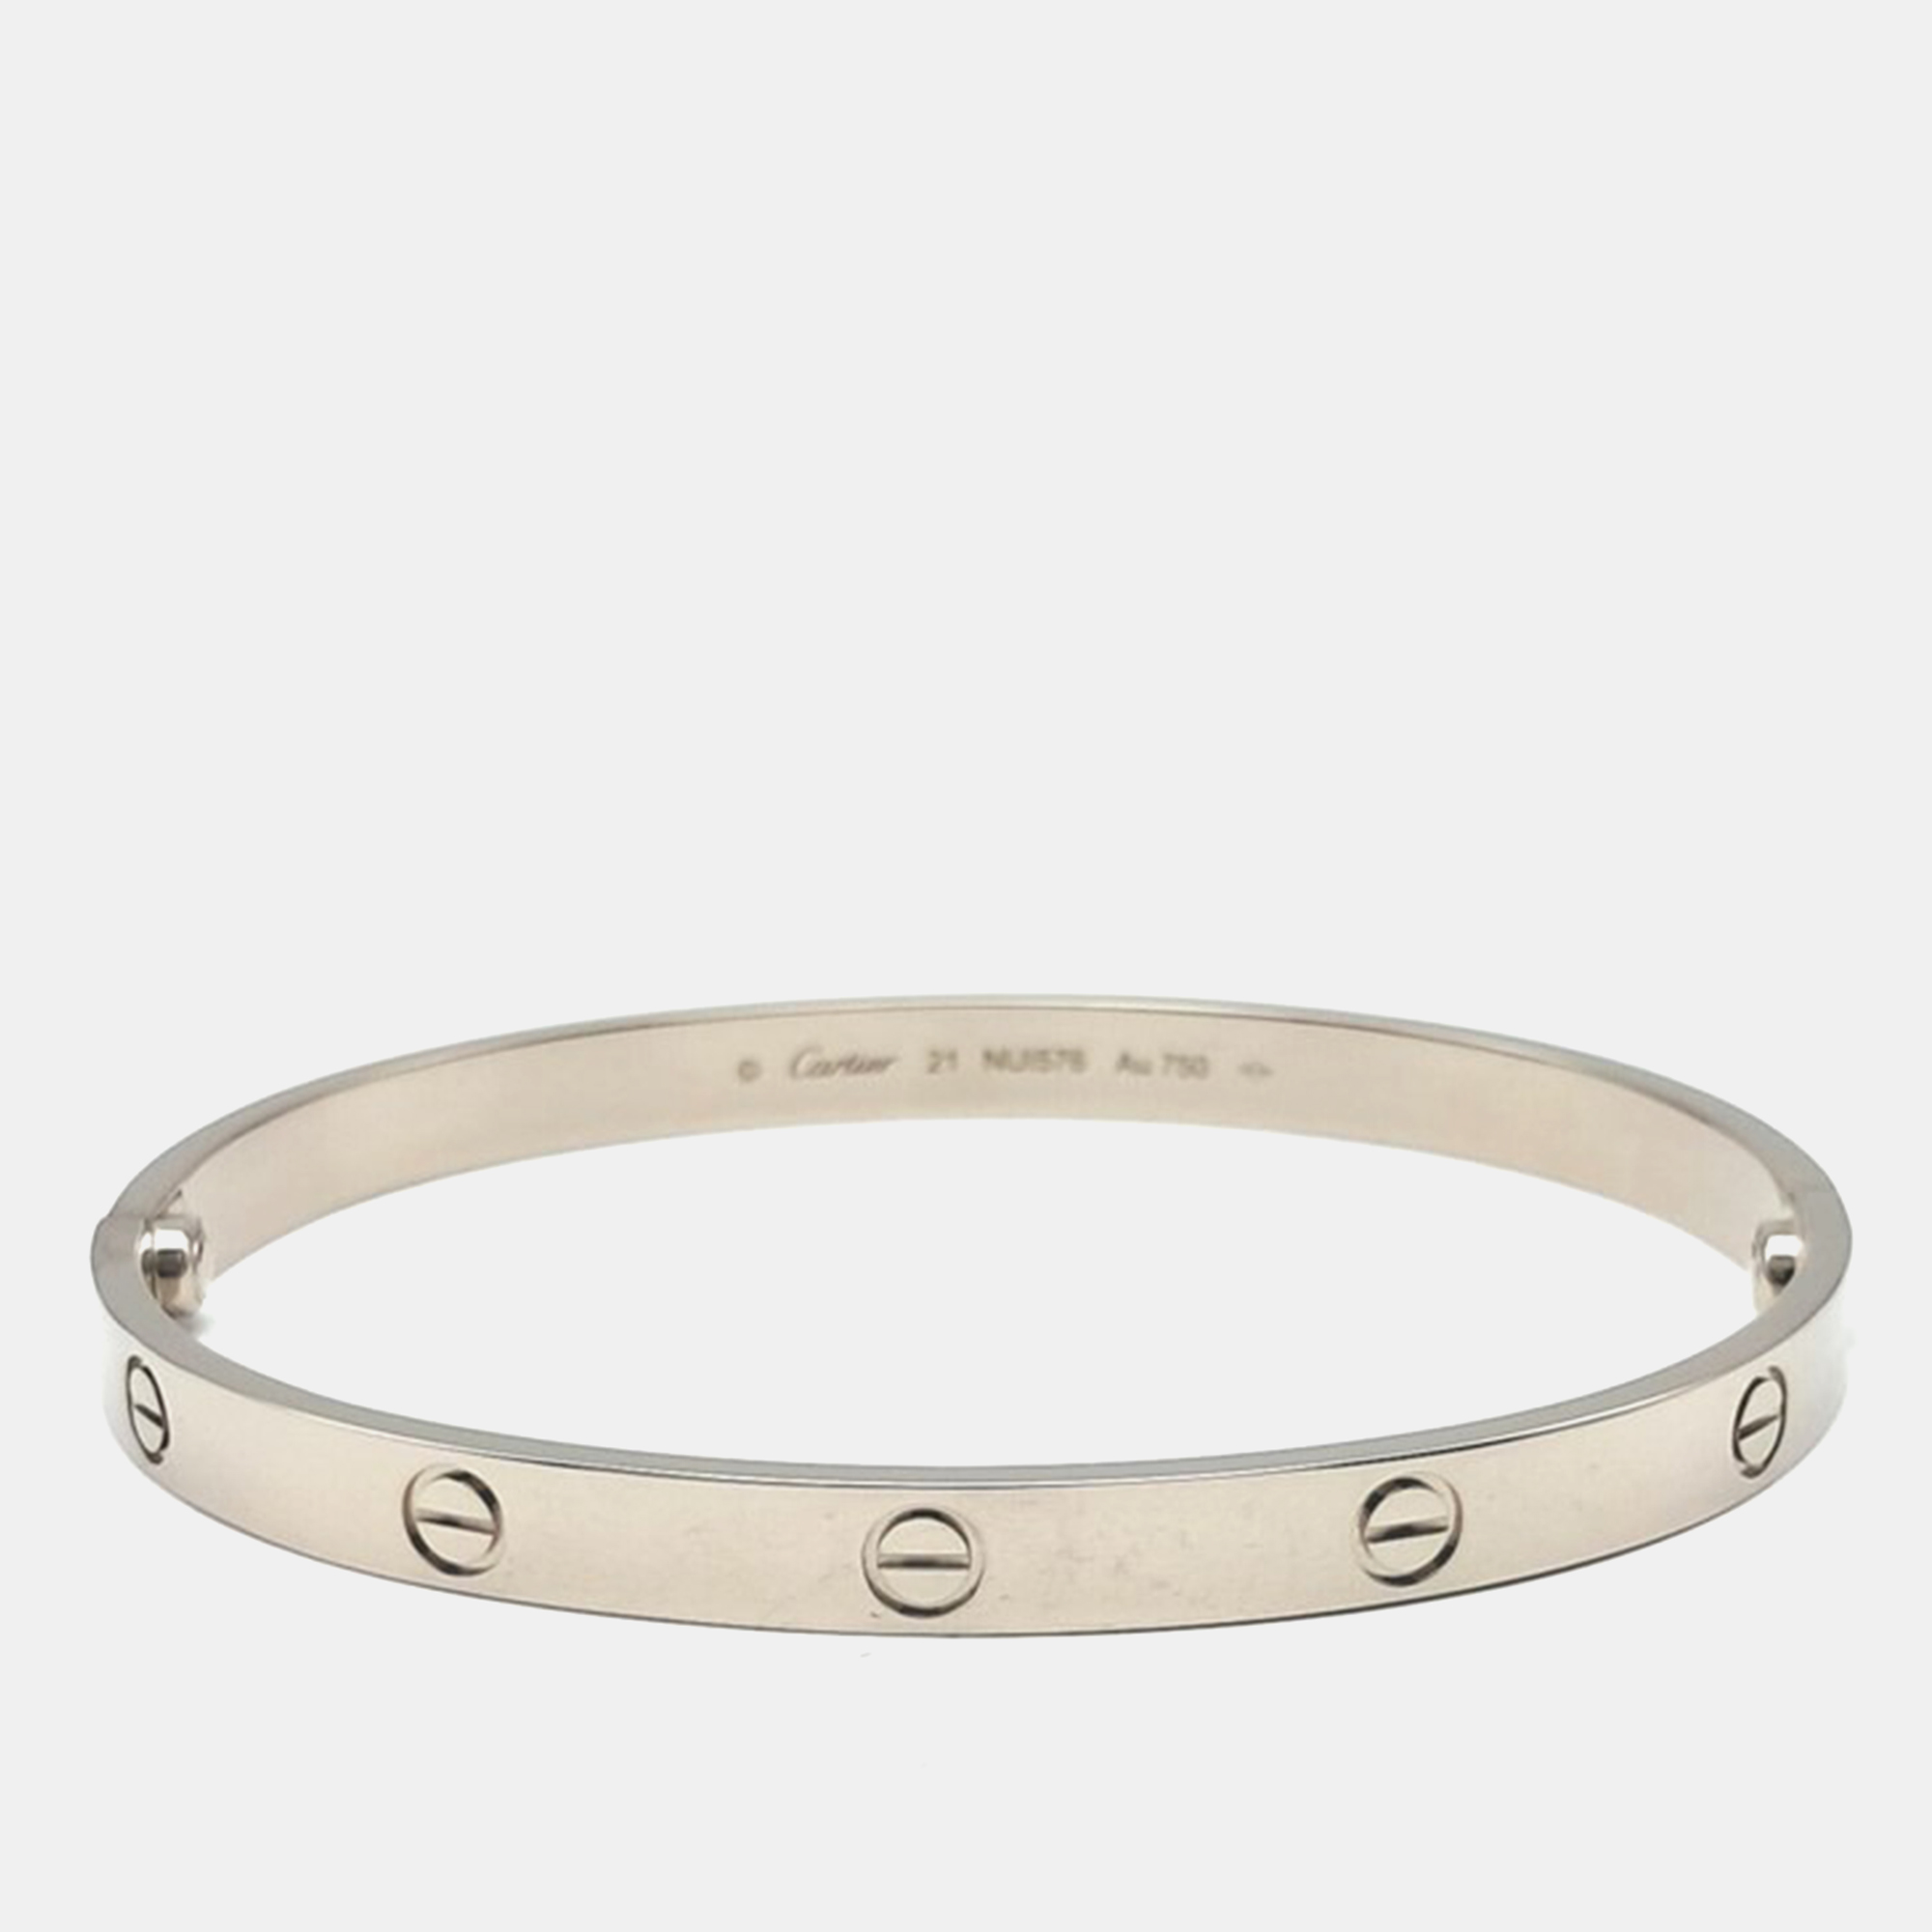 Cartier 18k white gold love bracelet